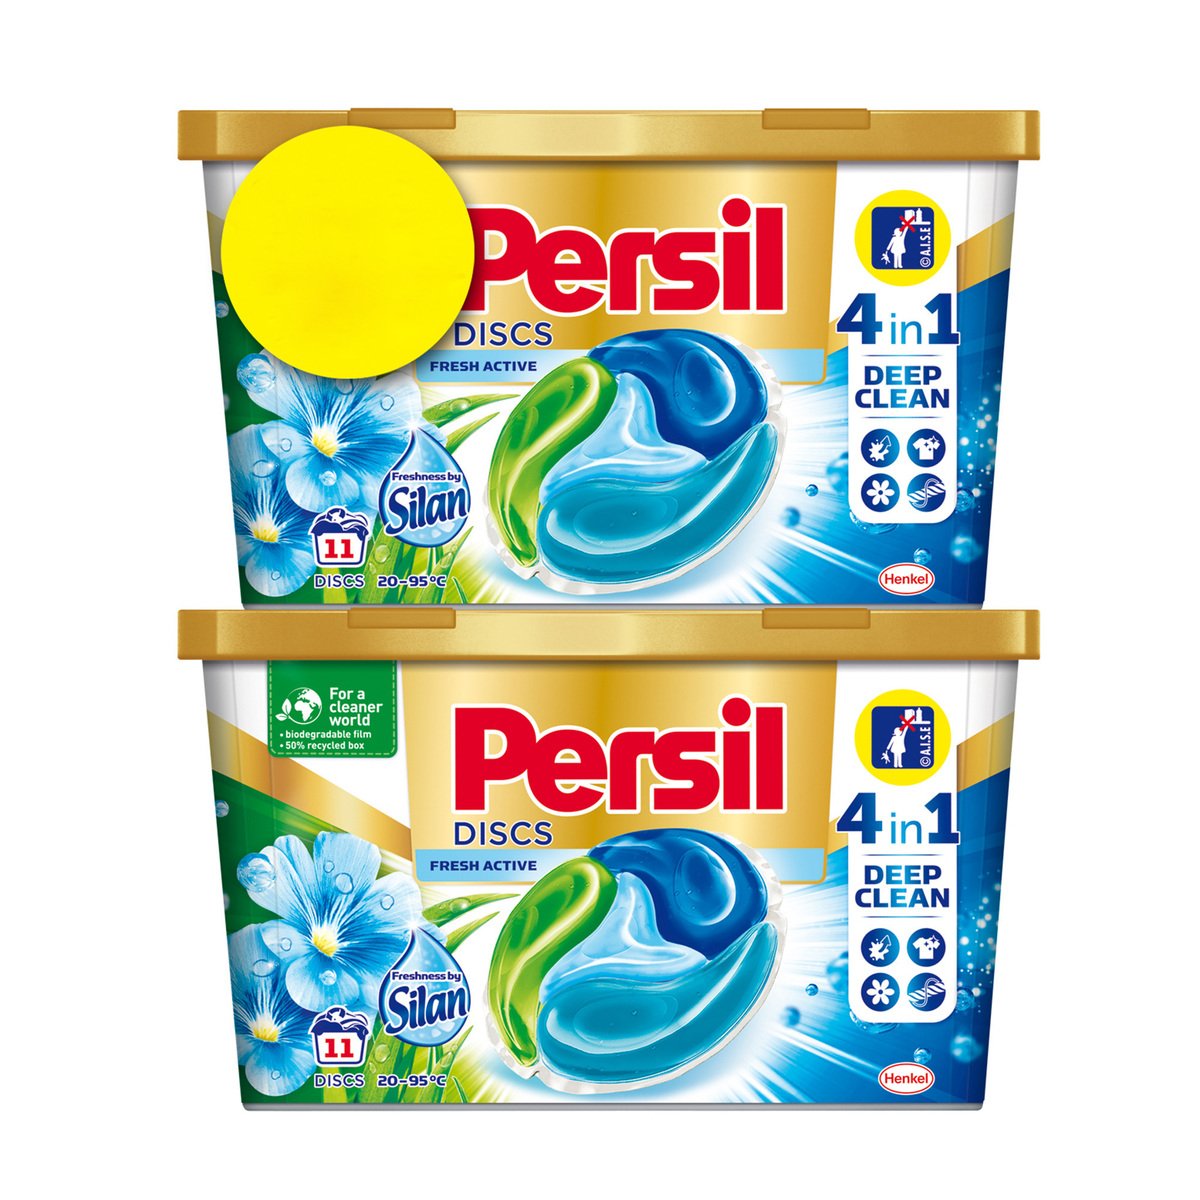 Persil Disc 4in1 Liquid Detergent Fresh Active 2 x 11pcs